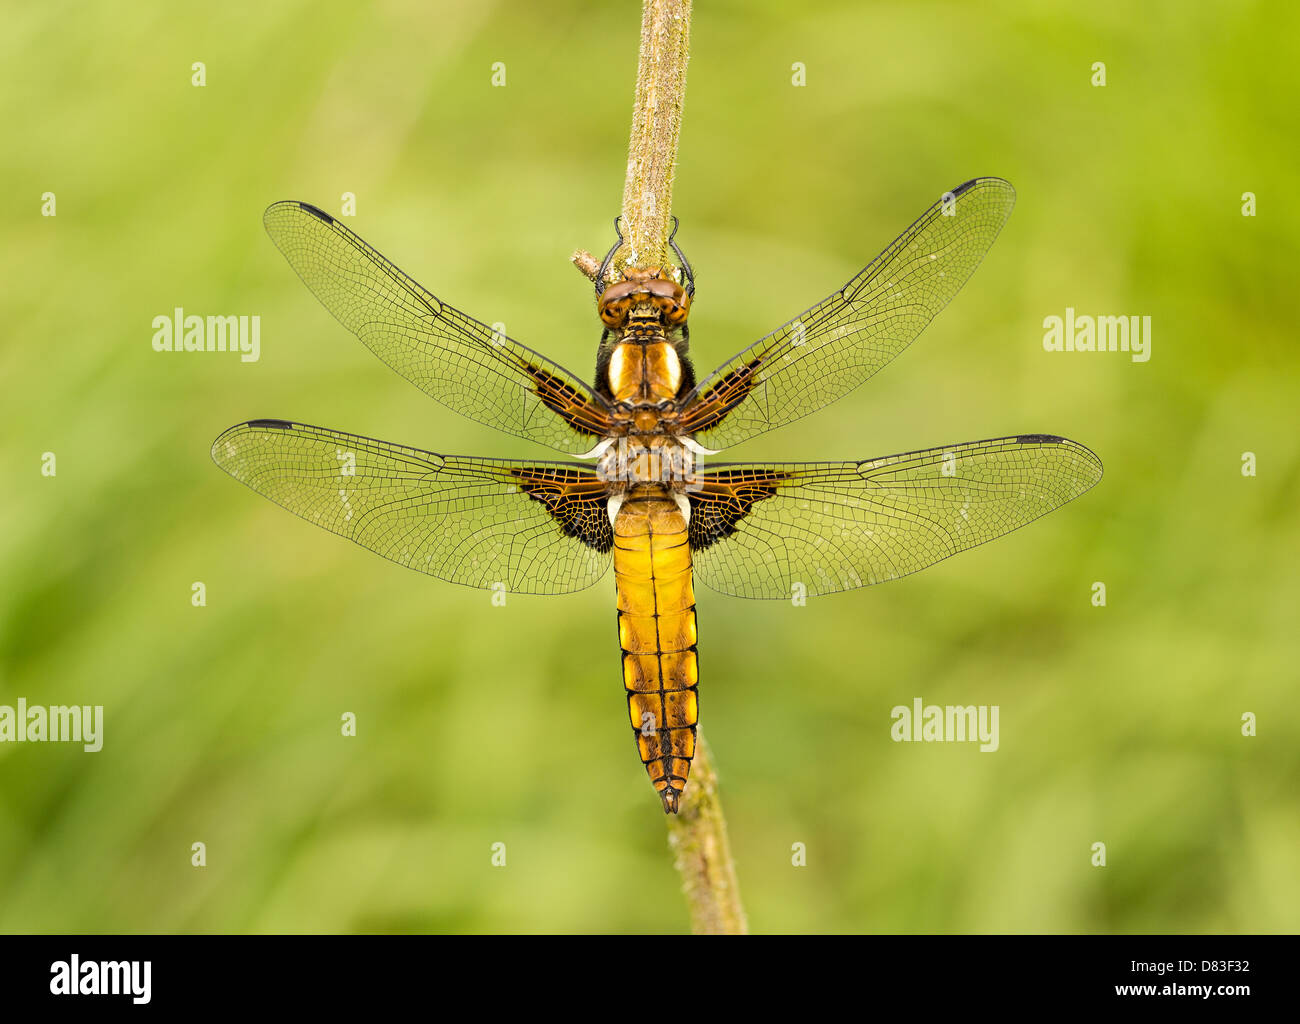 Eine unreife weibliche breiten Bodied Chaser Libelle hängt von einem Zweig, als sie in die schwache Frühlingssonne reift. Stockfoto